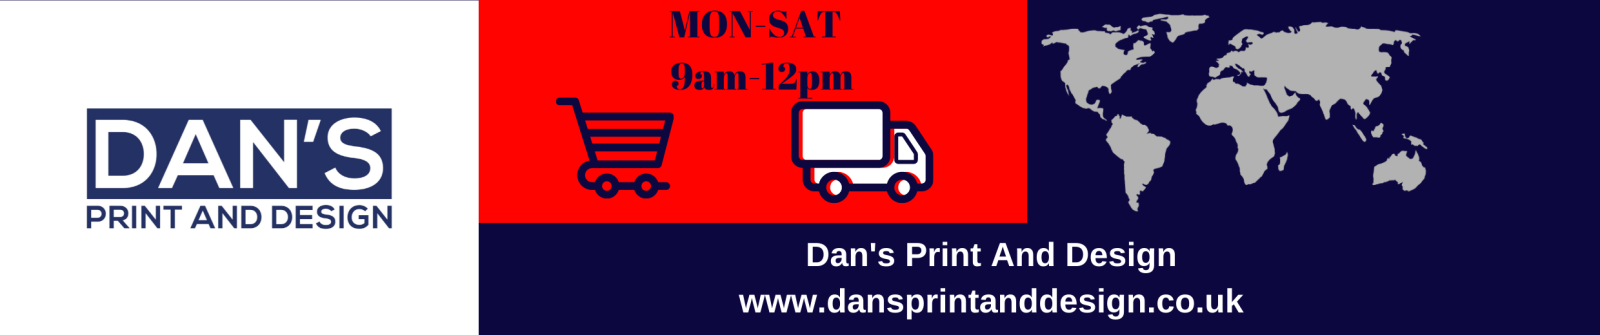 Dan's print and design UK business web banner